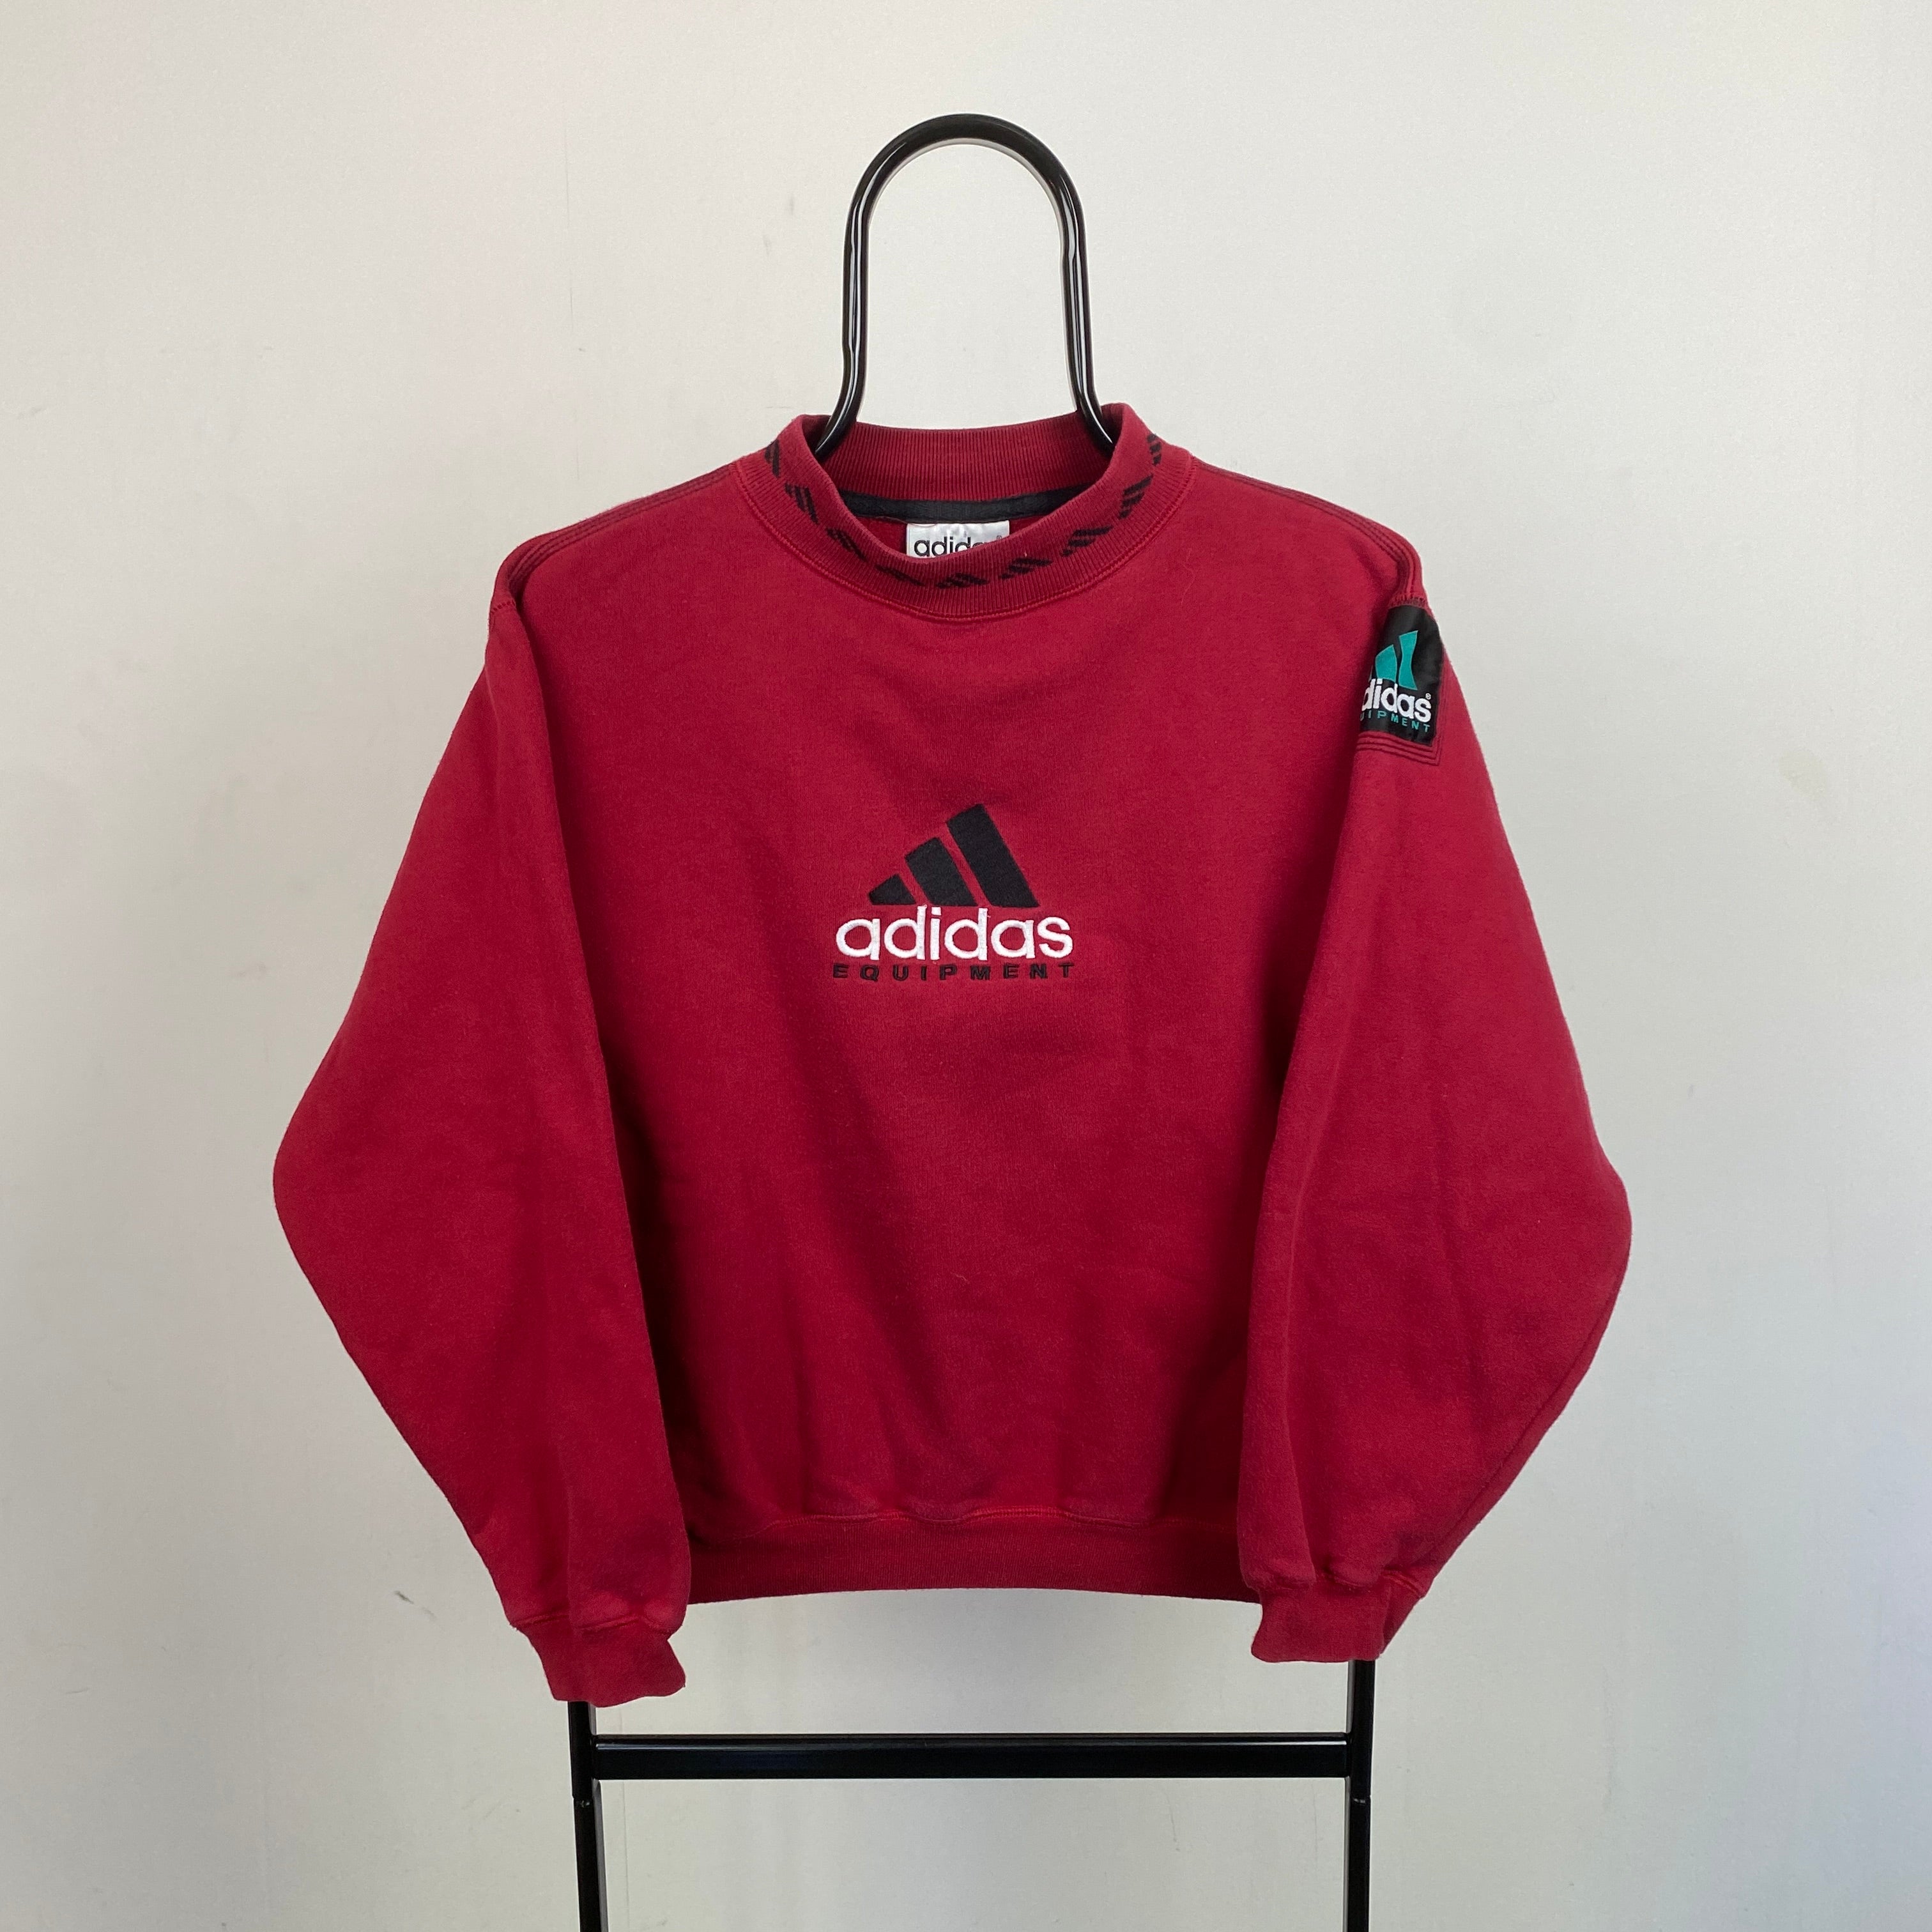 90s Adidas Equipment Sweatshirt Red XS